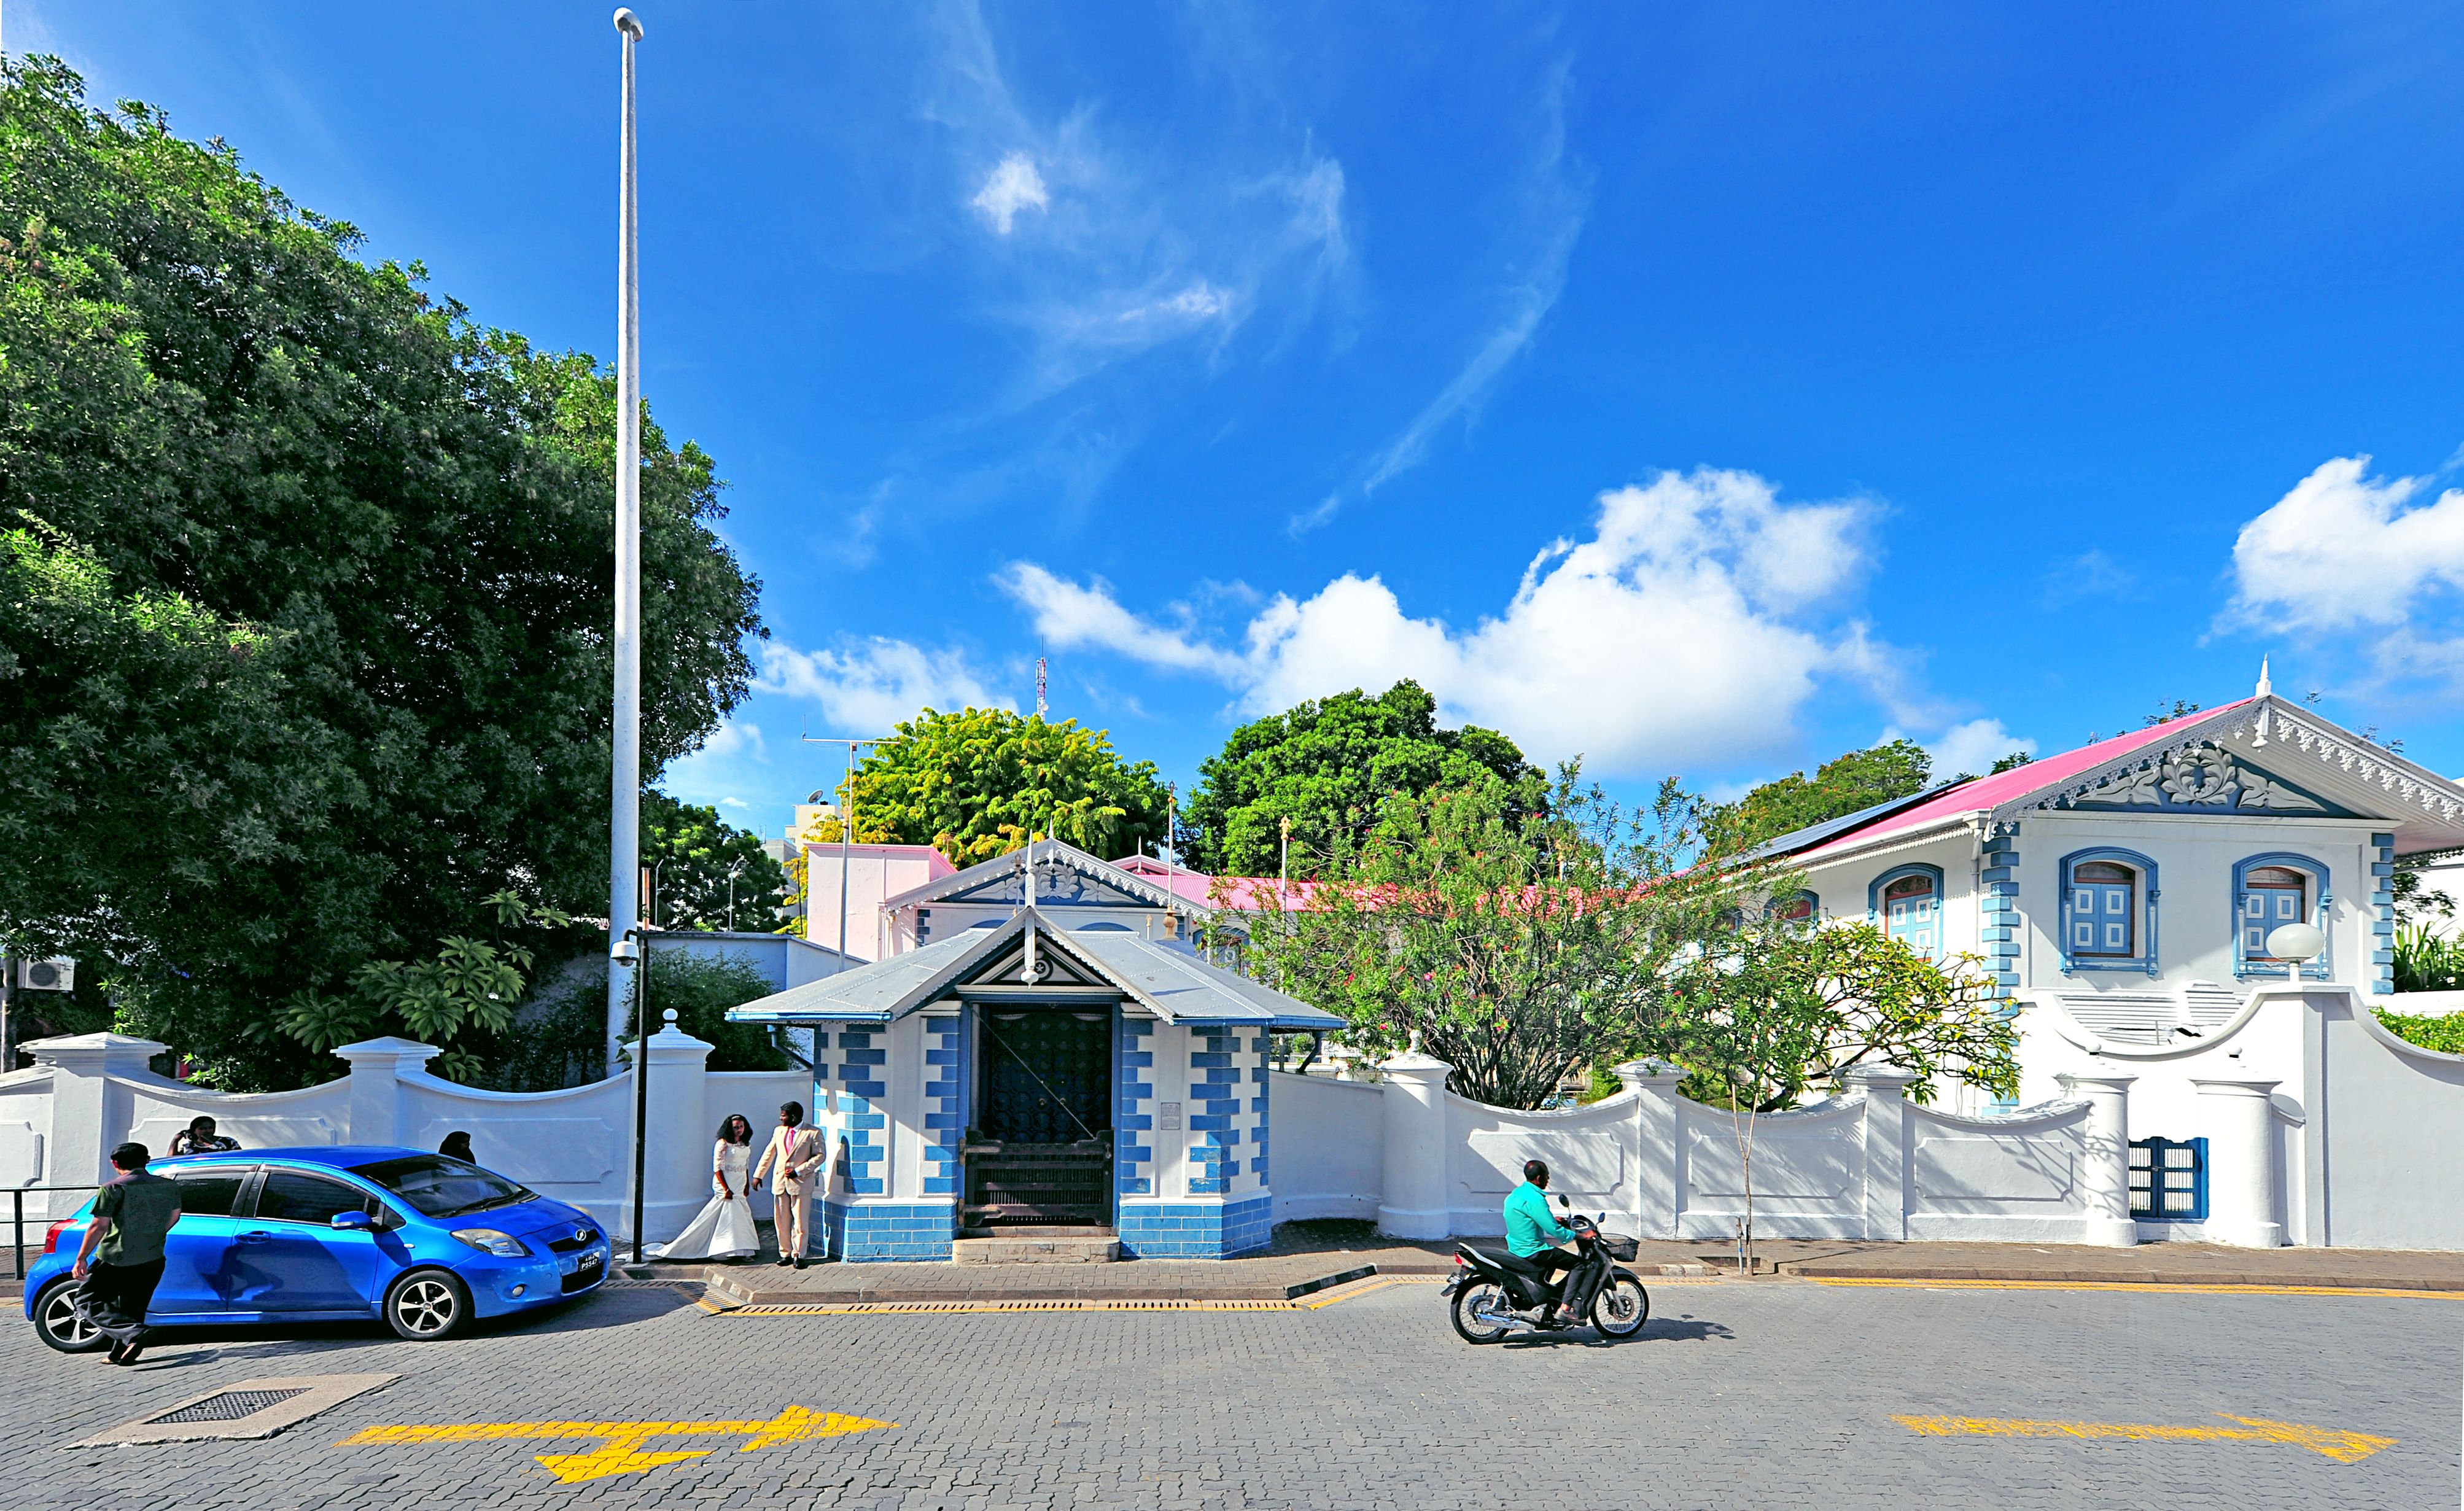 Medhu ziyaaraiy maldives